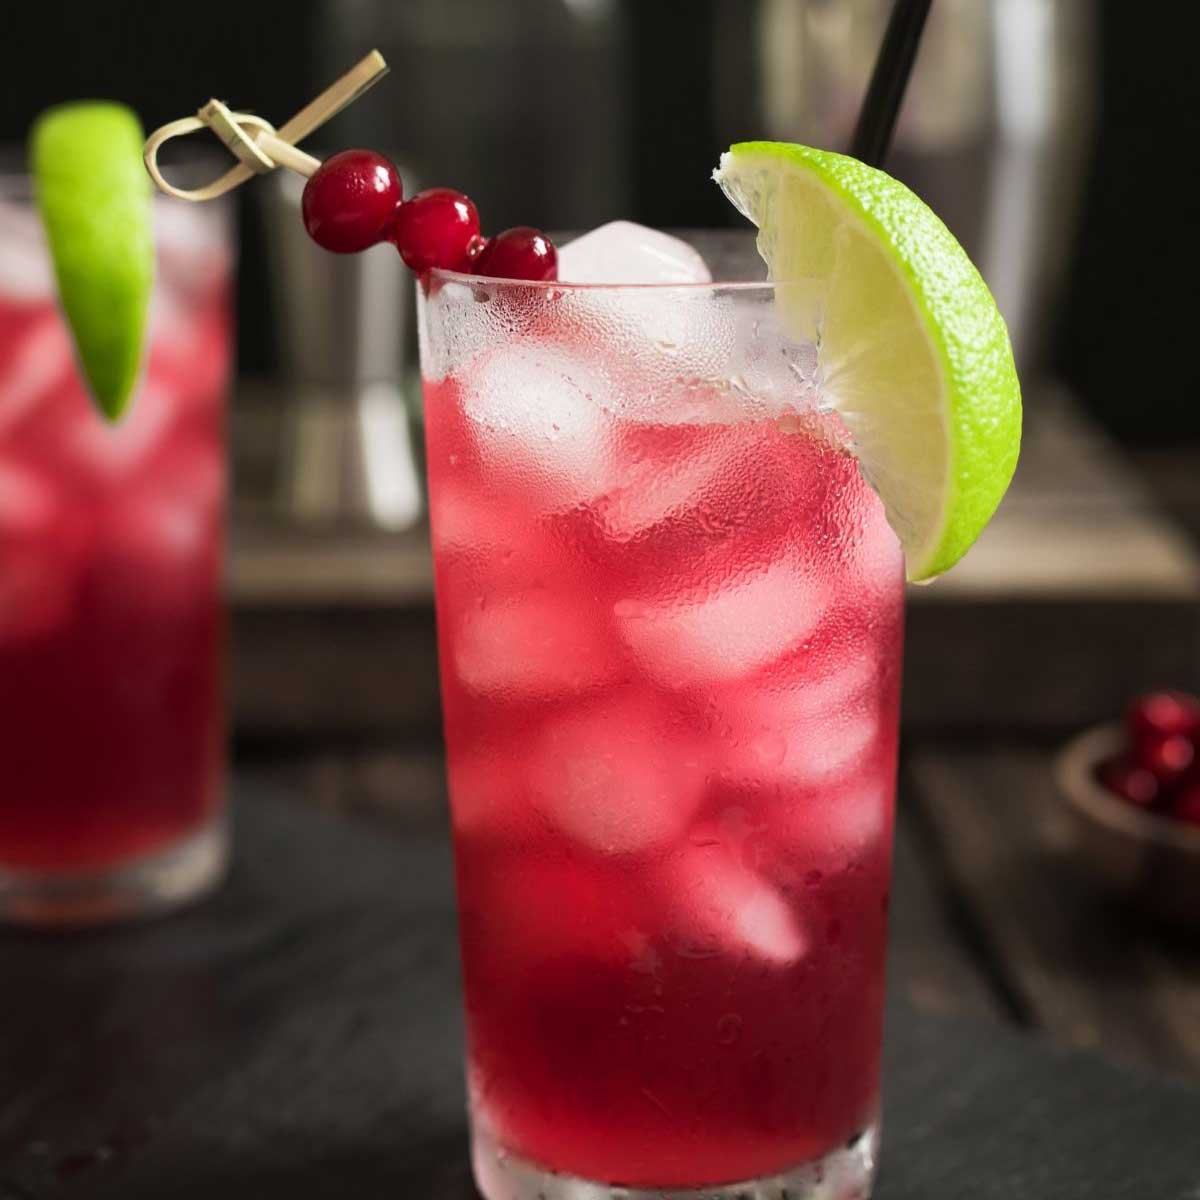 Cape codder cocktail i collins glas på mörk bakgrund med tranbär lime garnering.